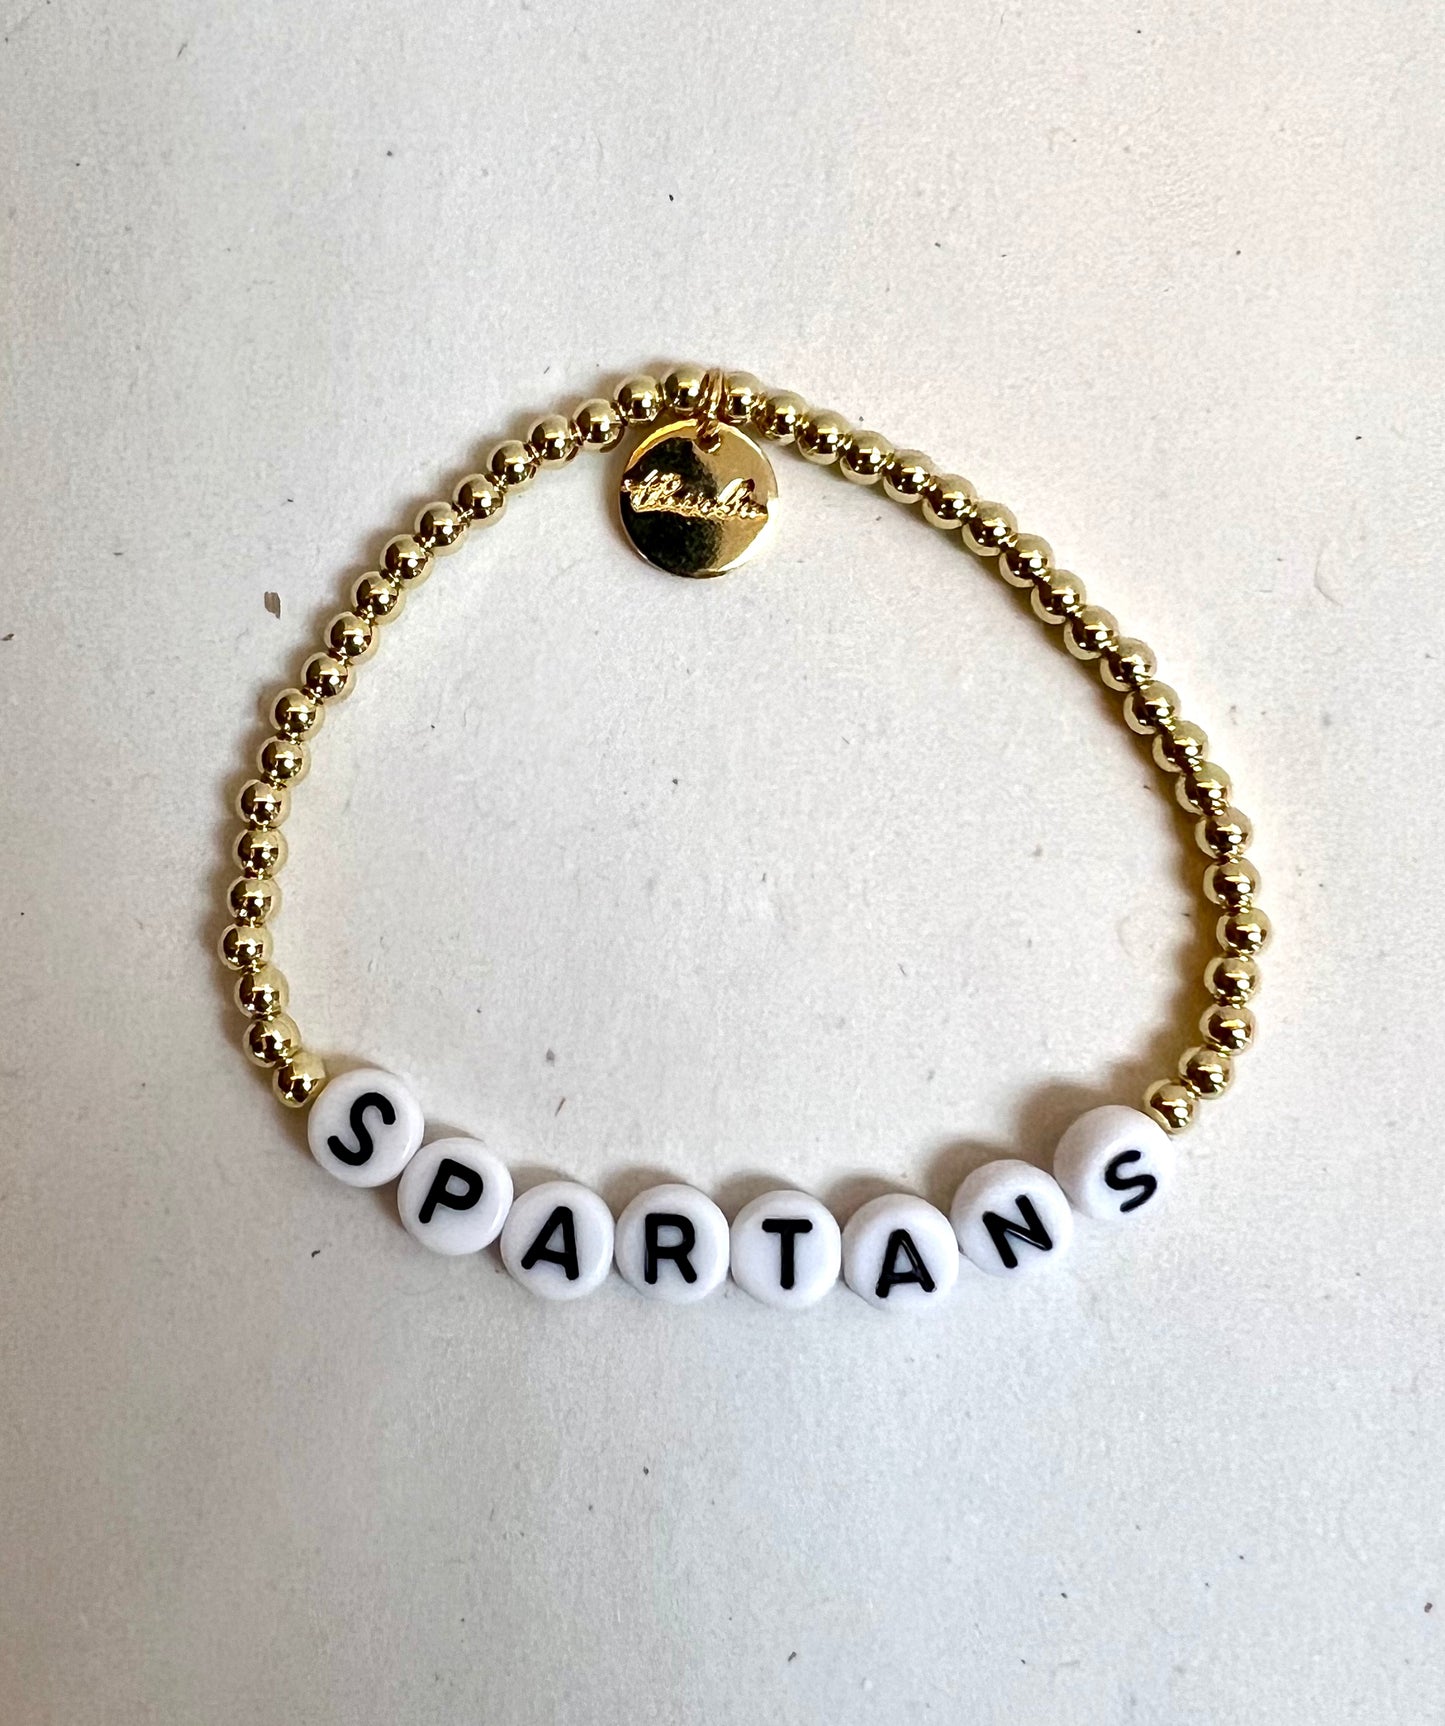 Spartans Bead Bracelets